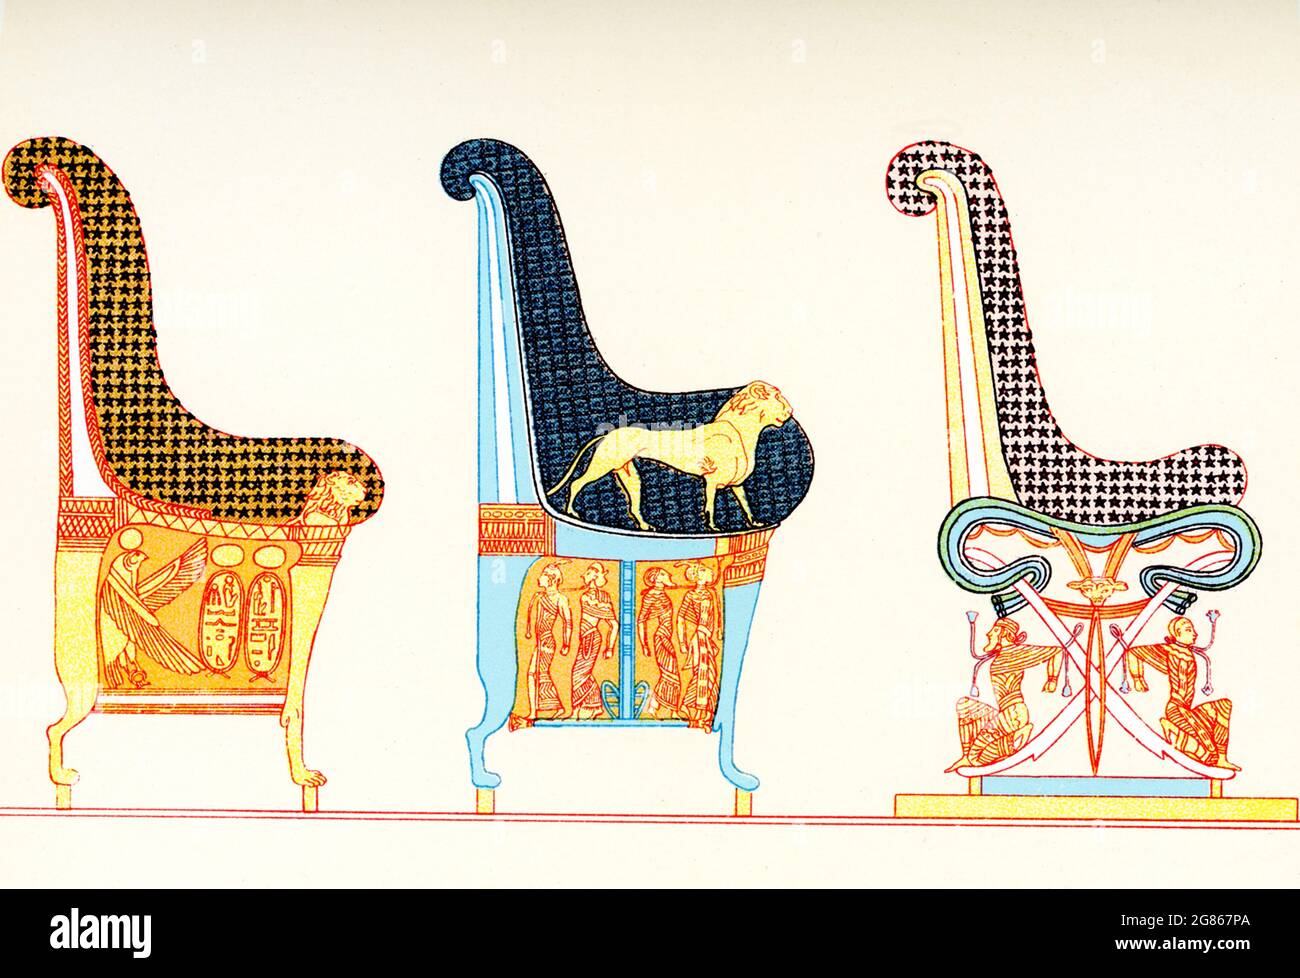 El título que acompaña a esta ilustración de 1903 en el libro de Gaston Maspero sobre Egipto dice: “Pinturas de sillas en la quinta tumba de los reyes de Tebas Oriental - Byban el Molouk”. Byban (también Biban) el Molouk es un estrecho valle del centro de Egipto cerca del sitio de la antigua Tebas entre Karnak y Luxor. El valle contiene las tumbas de numerosos faraones de las dinastías XVIII, XIX y XX, incluyendo la de Tutankhamon. La zona es conocida como el valle de los Reyes y la Quinta Tumba es de KV5, construida para albergar a los hijos de Ramsés II Foto de stock